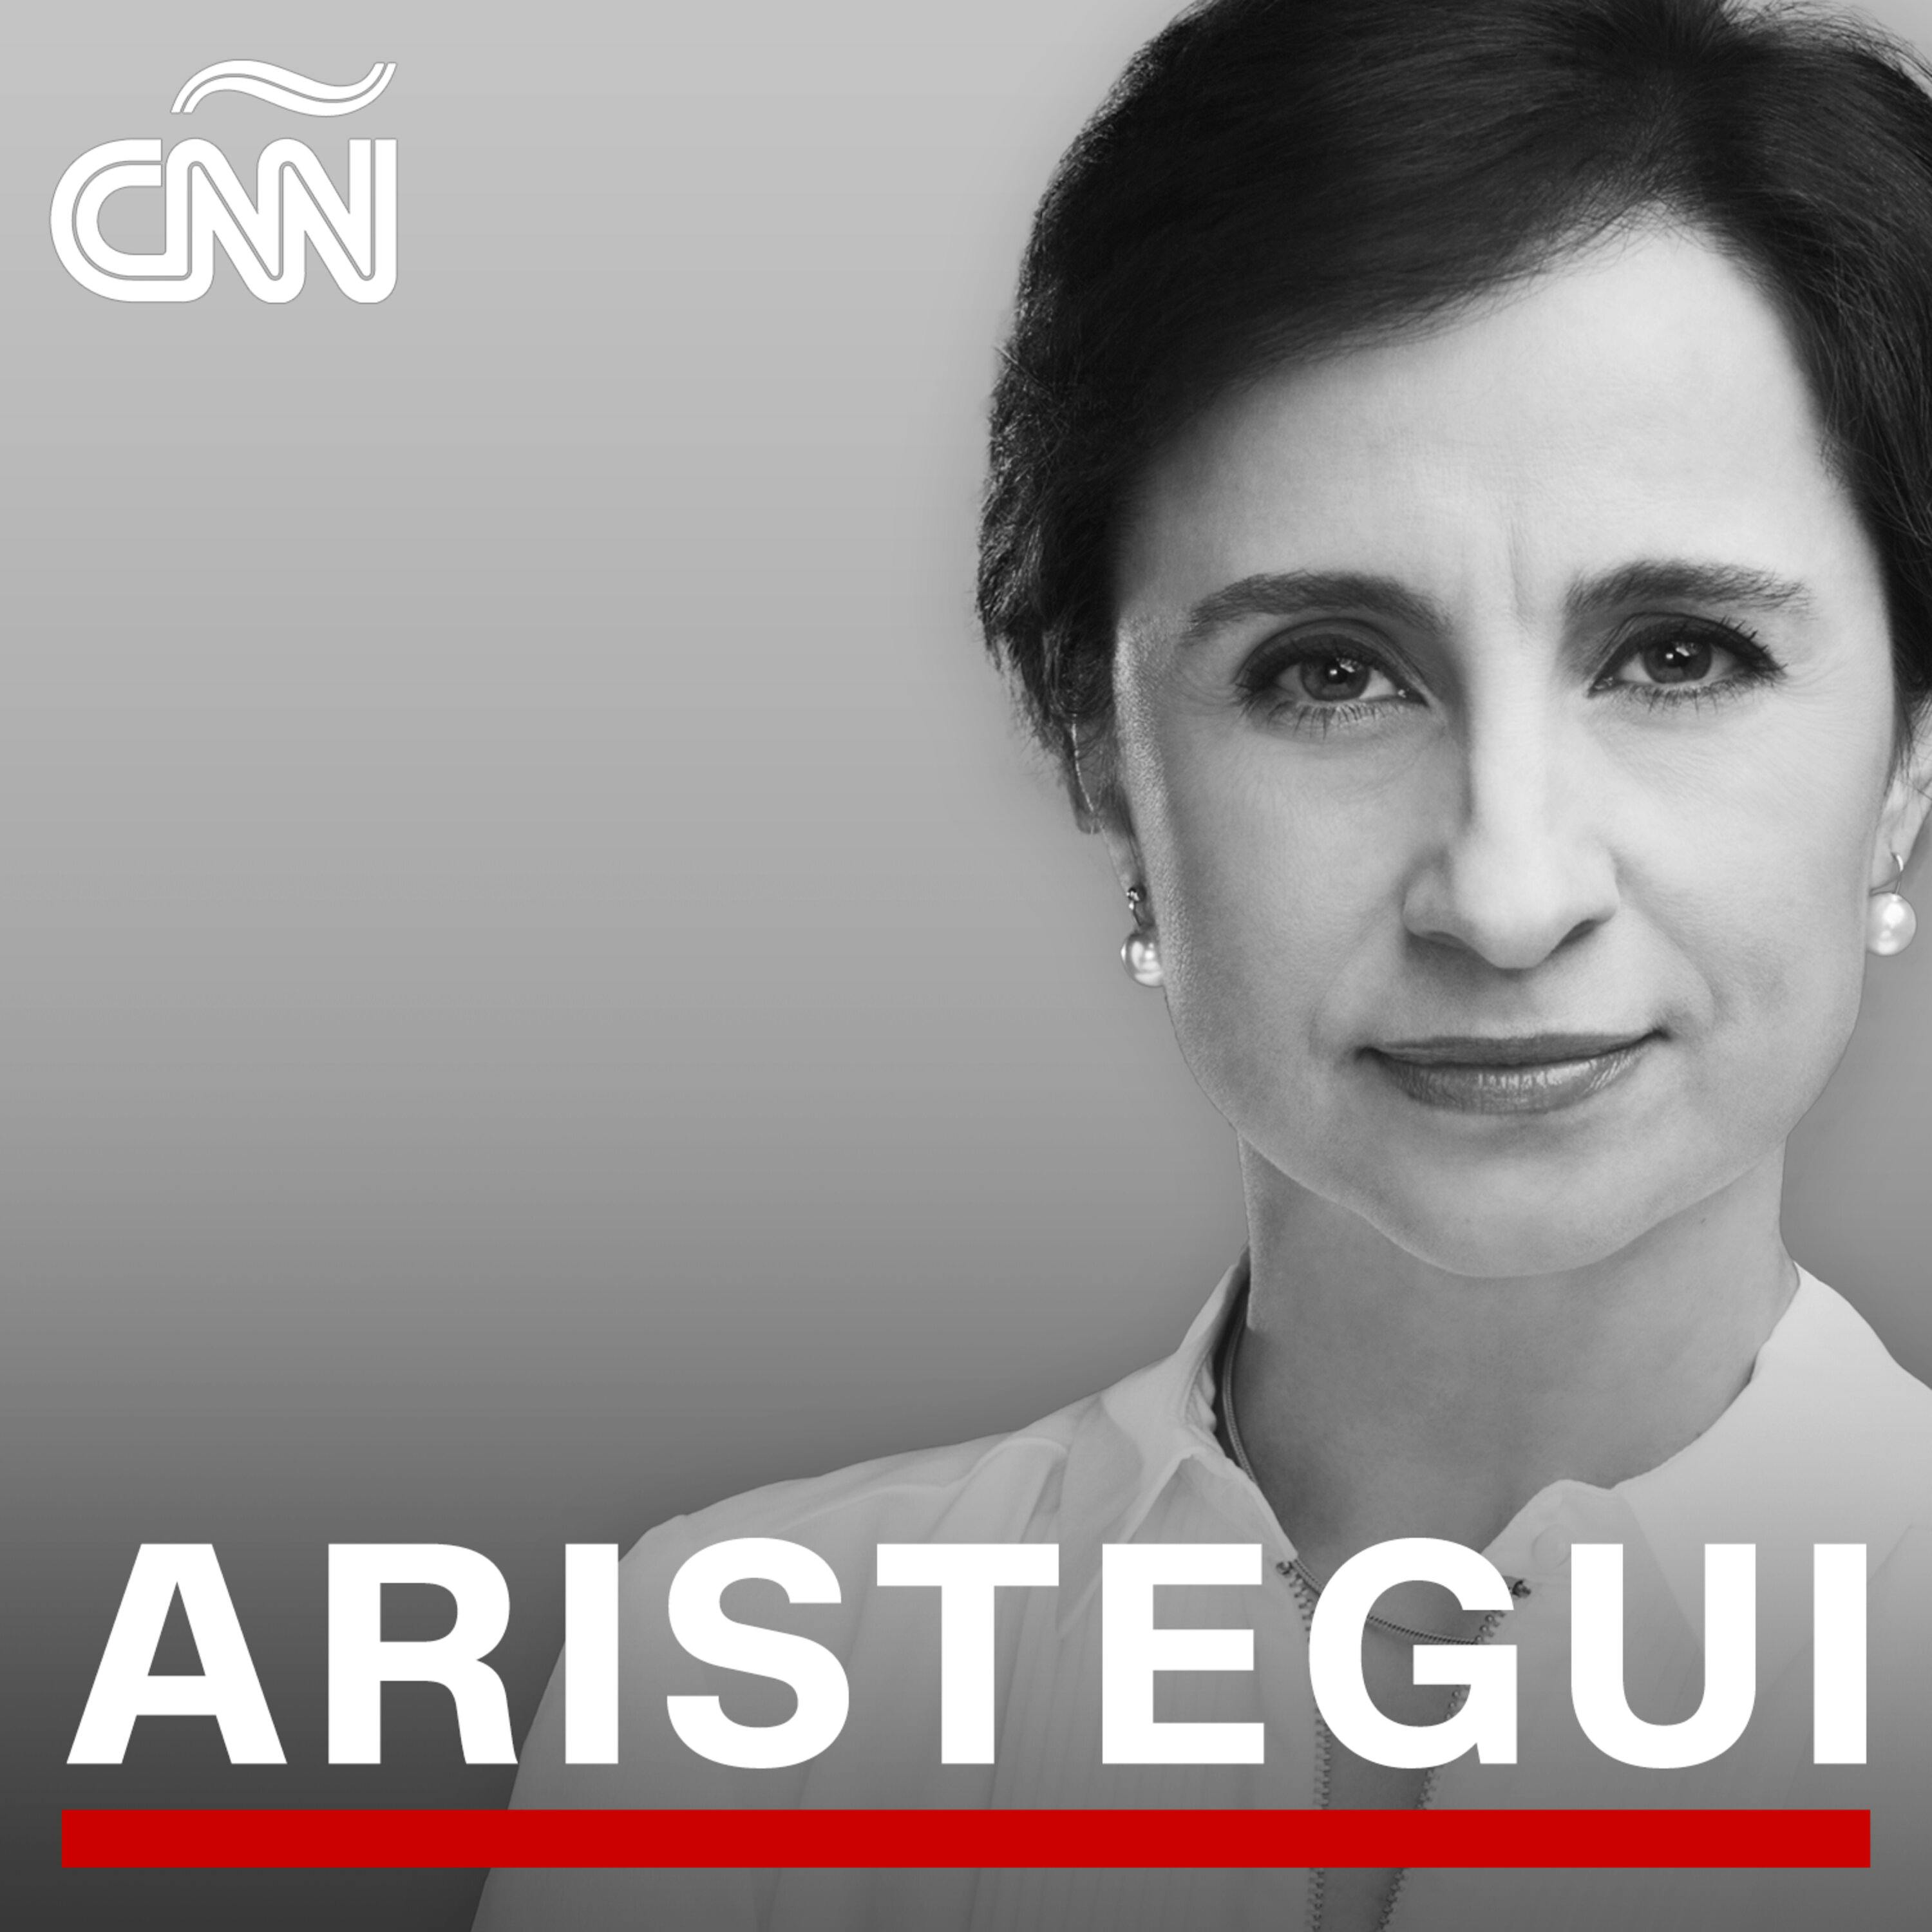 María Herrera Magdaleno y su lucha en busca de desaparecidos son reconocidos por la revista TIME